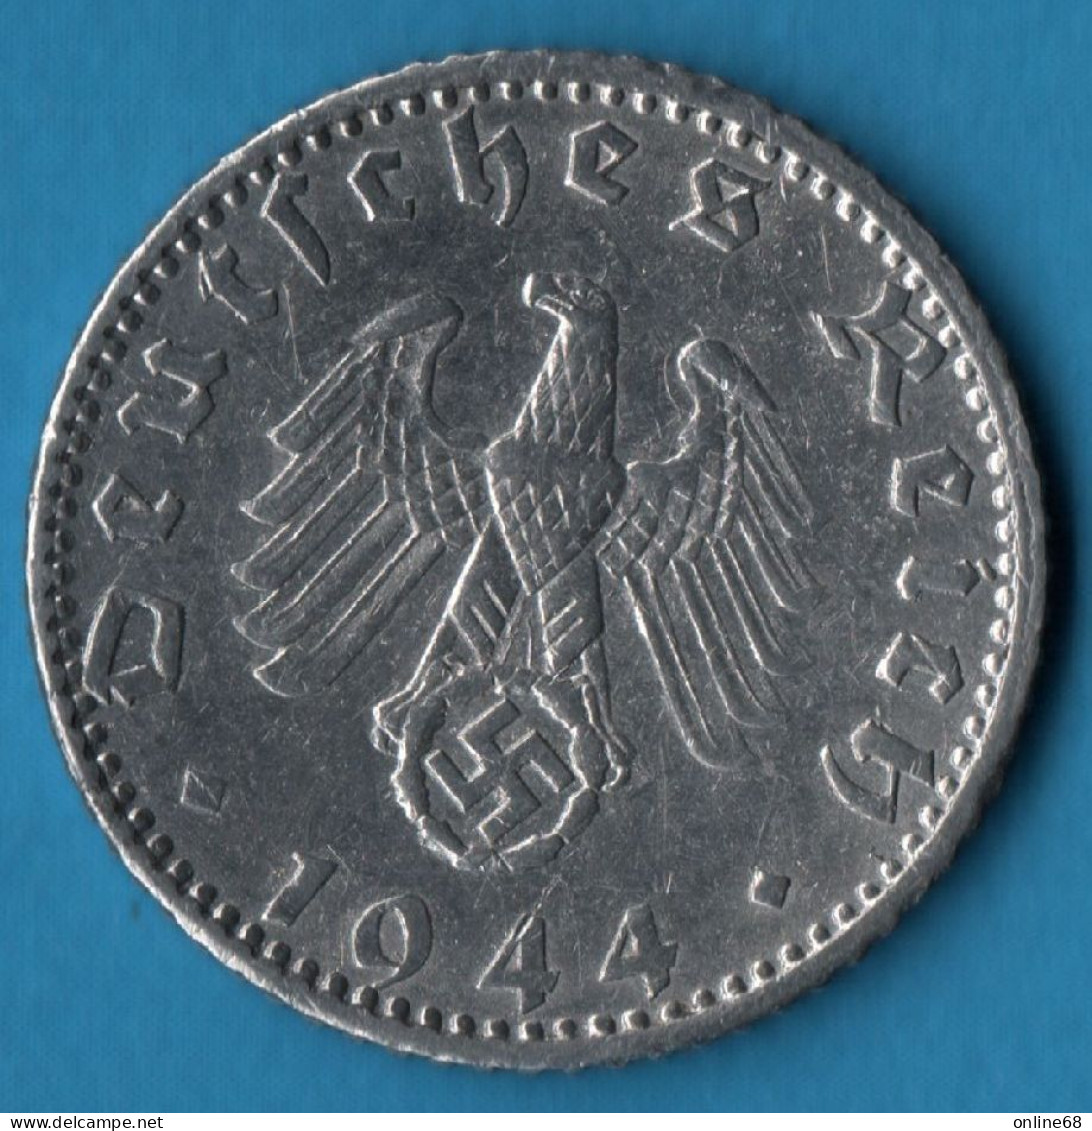 DEUTSCHES REICH 50 REICHSPFENNIG 1944 F KM# 96 Svastika - 50 Reichspfennig